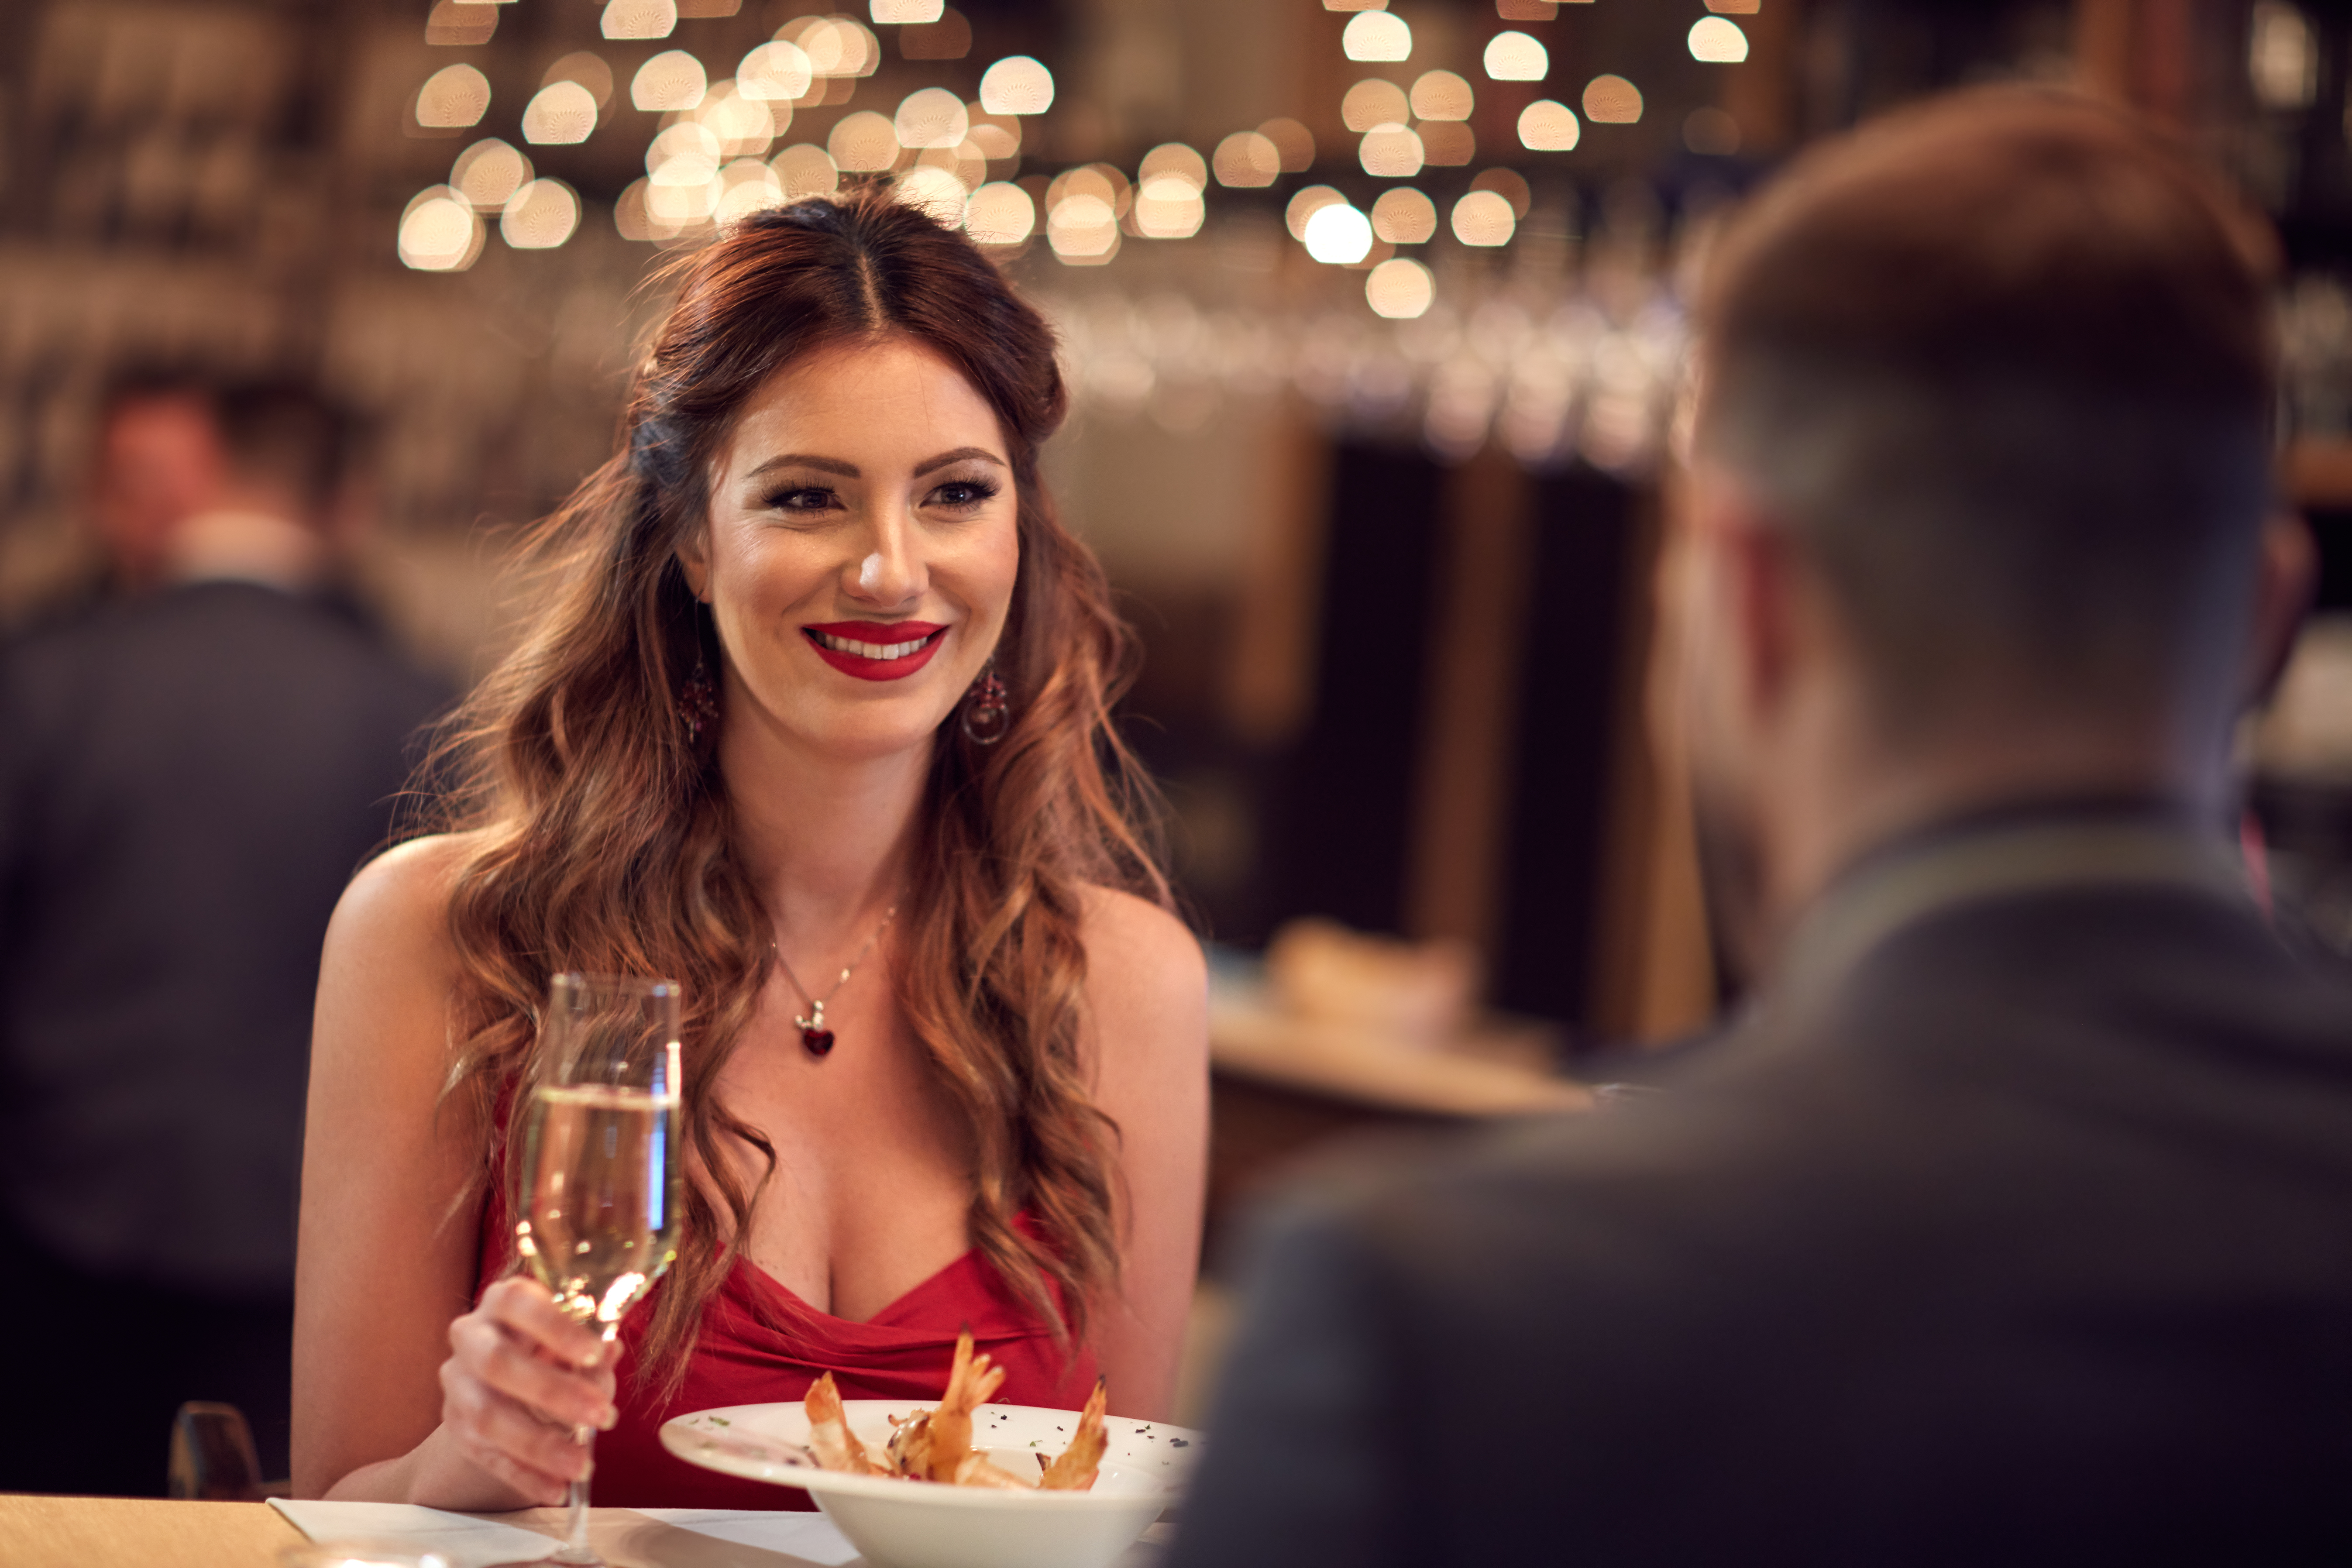 Frau im roten Kleid beim Abendessen mit ihrem Freund | Quelle: Shutterstock